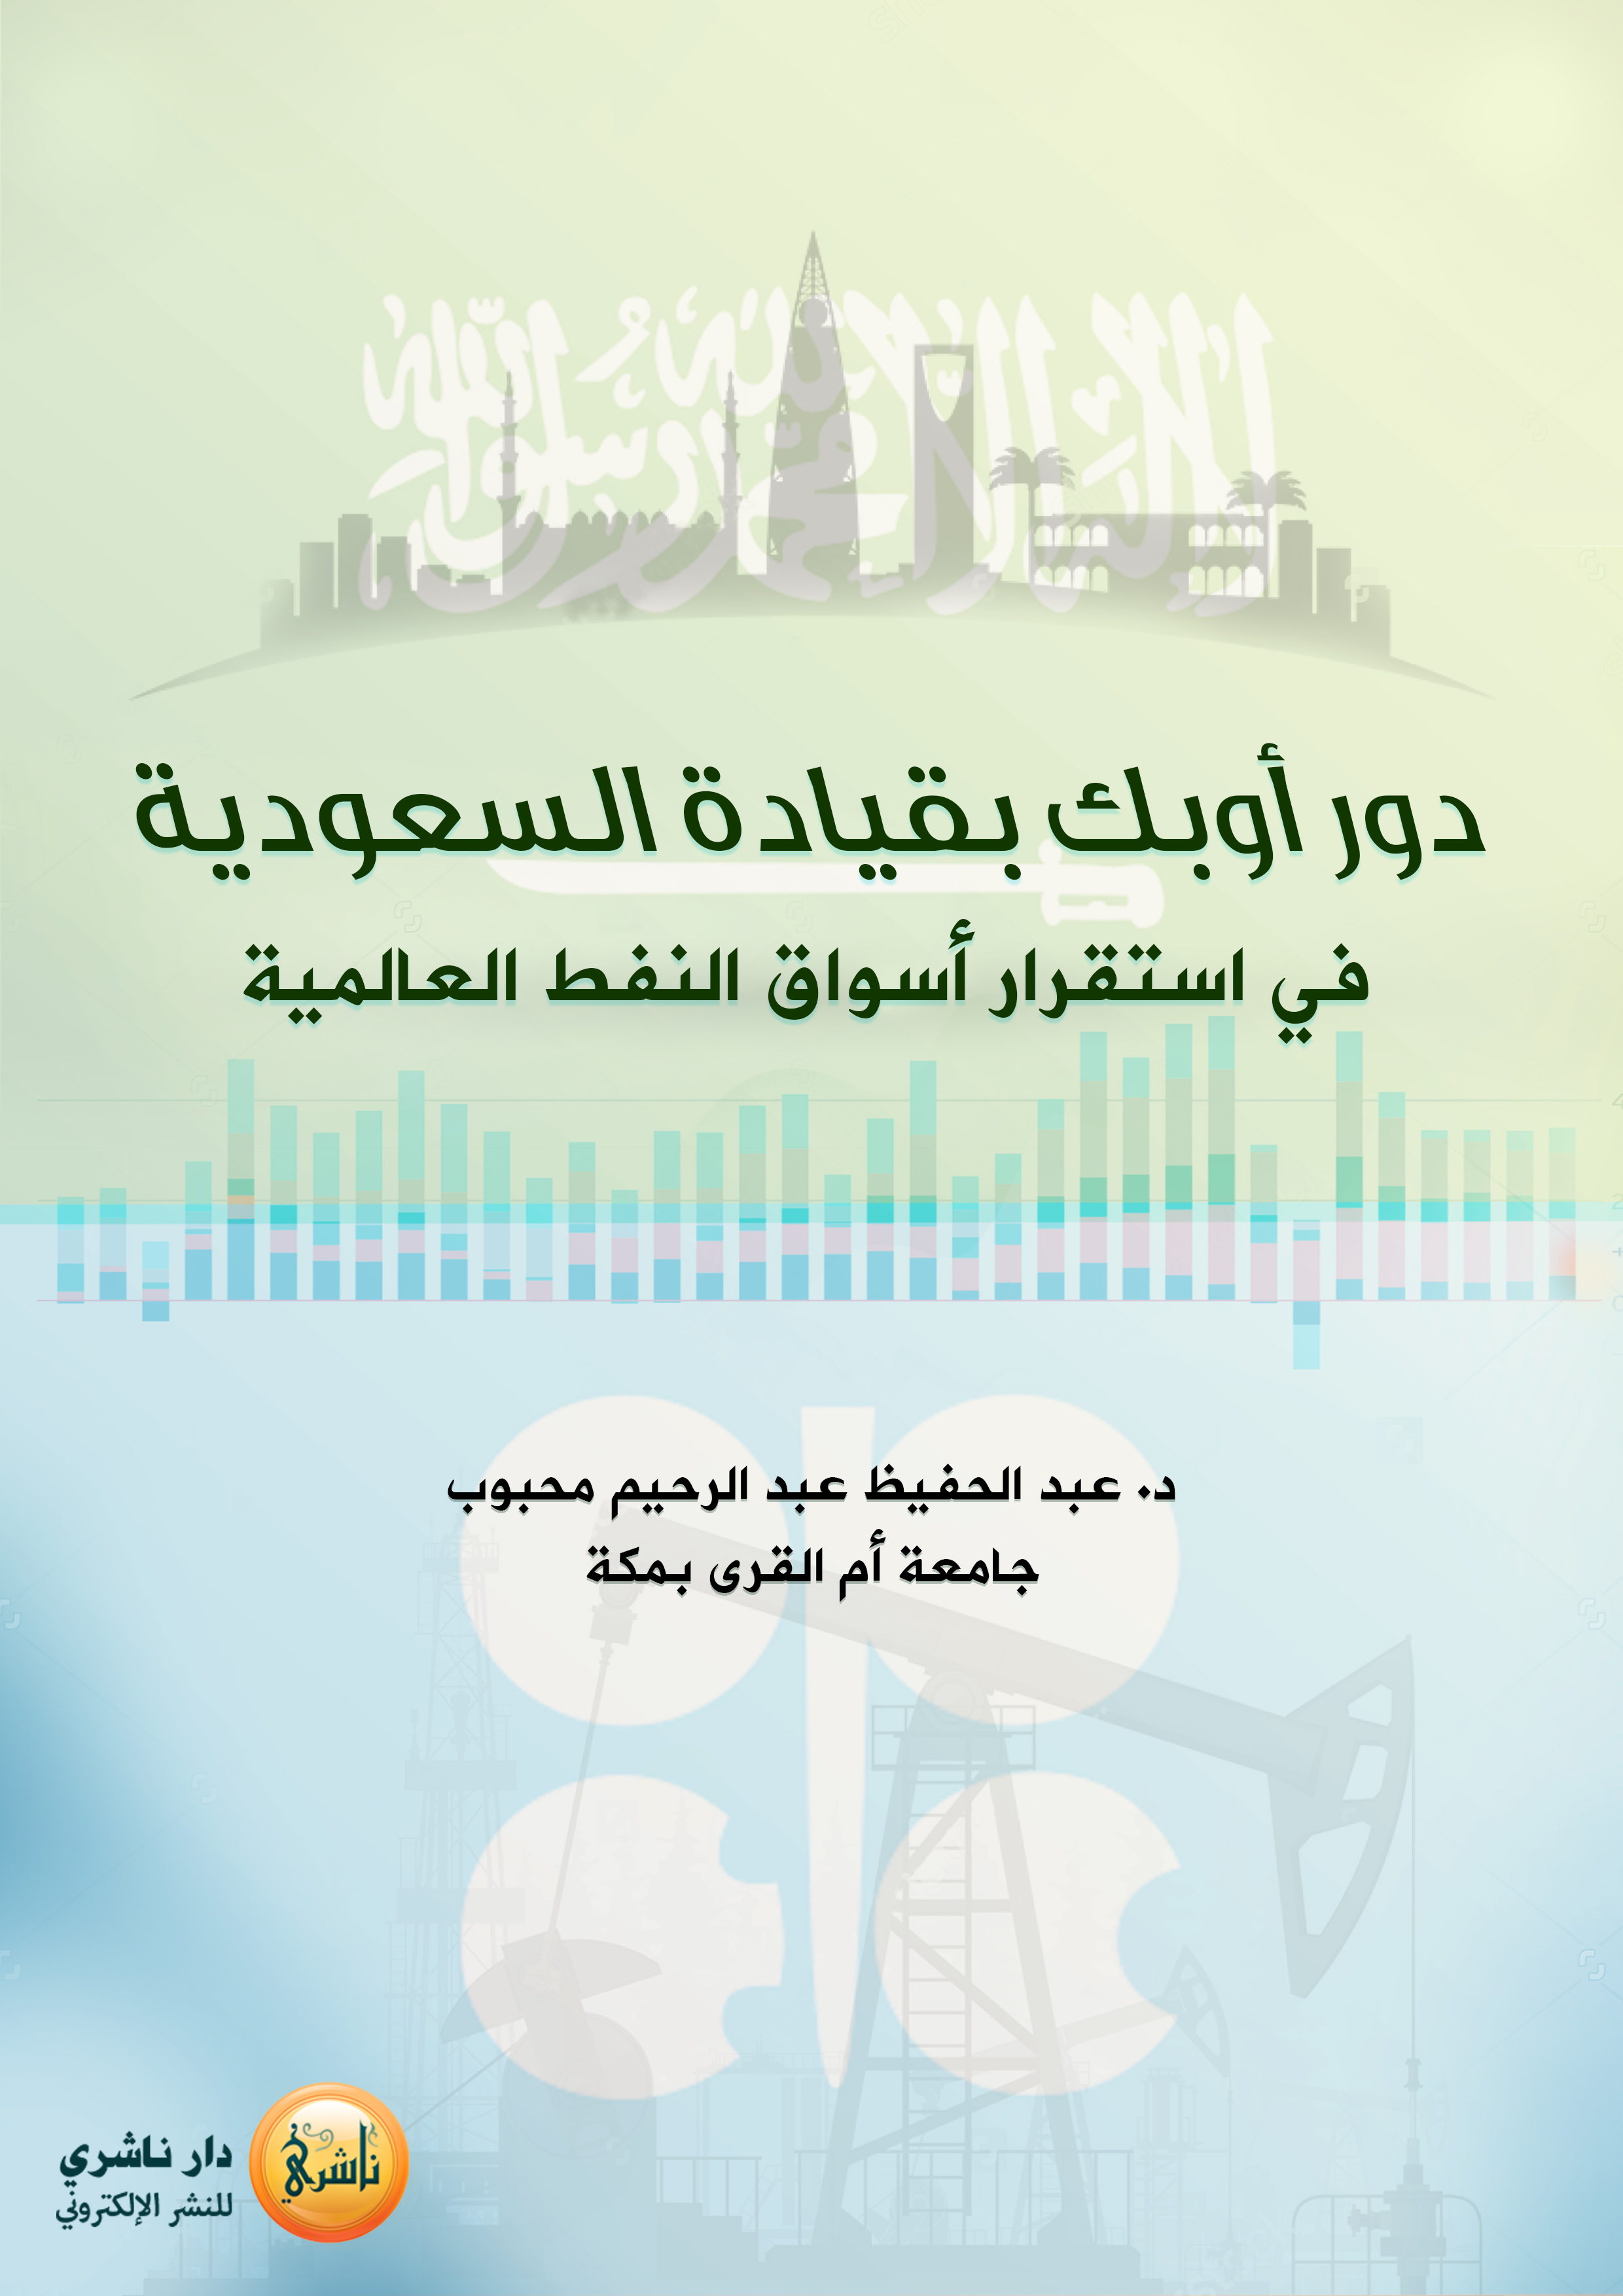 دور أوبك بقيادة السعودية في استقرار أسواق النفط العالمية - د. عبد الحفيظ عبد الرحيم محبوب